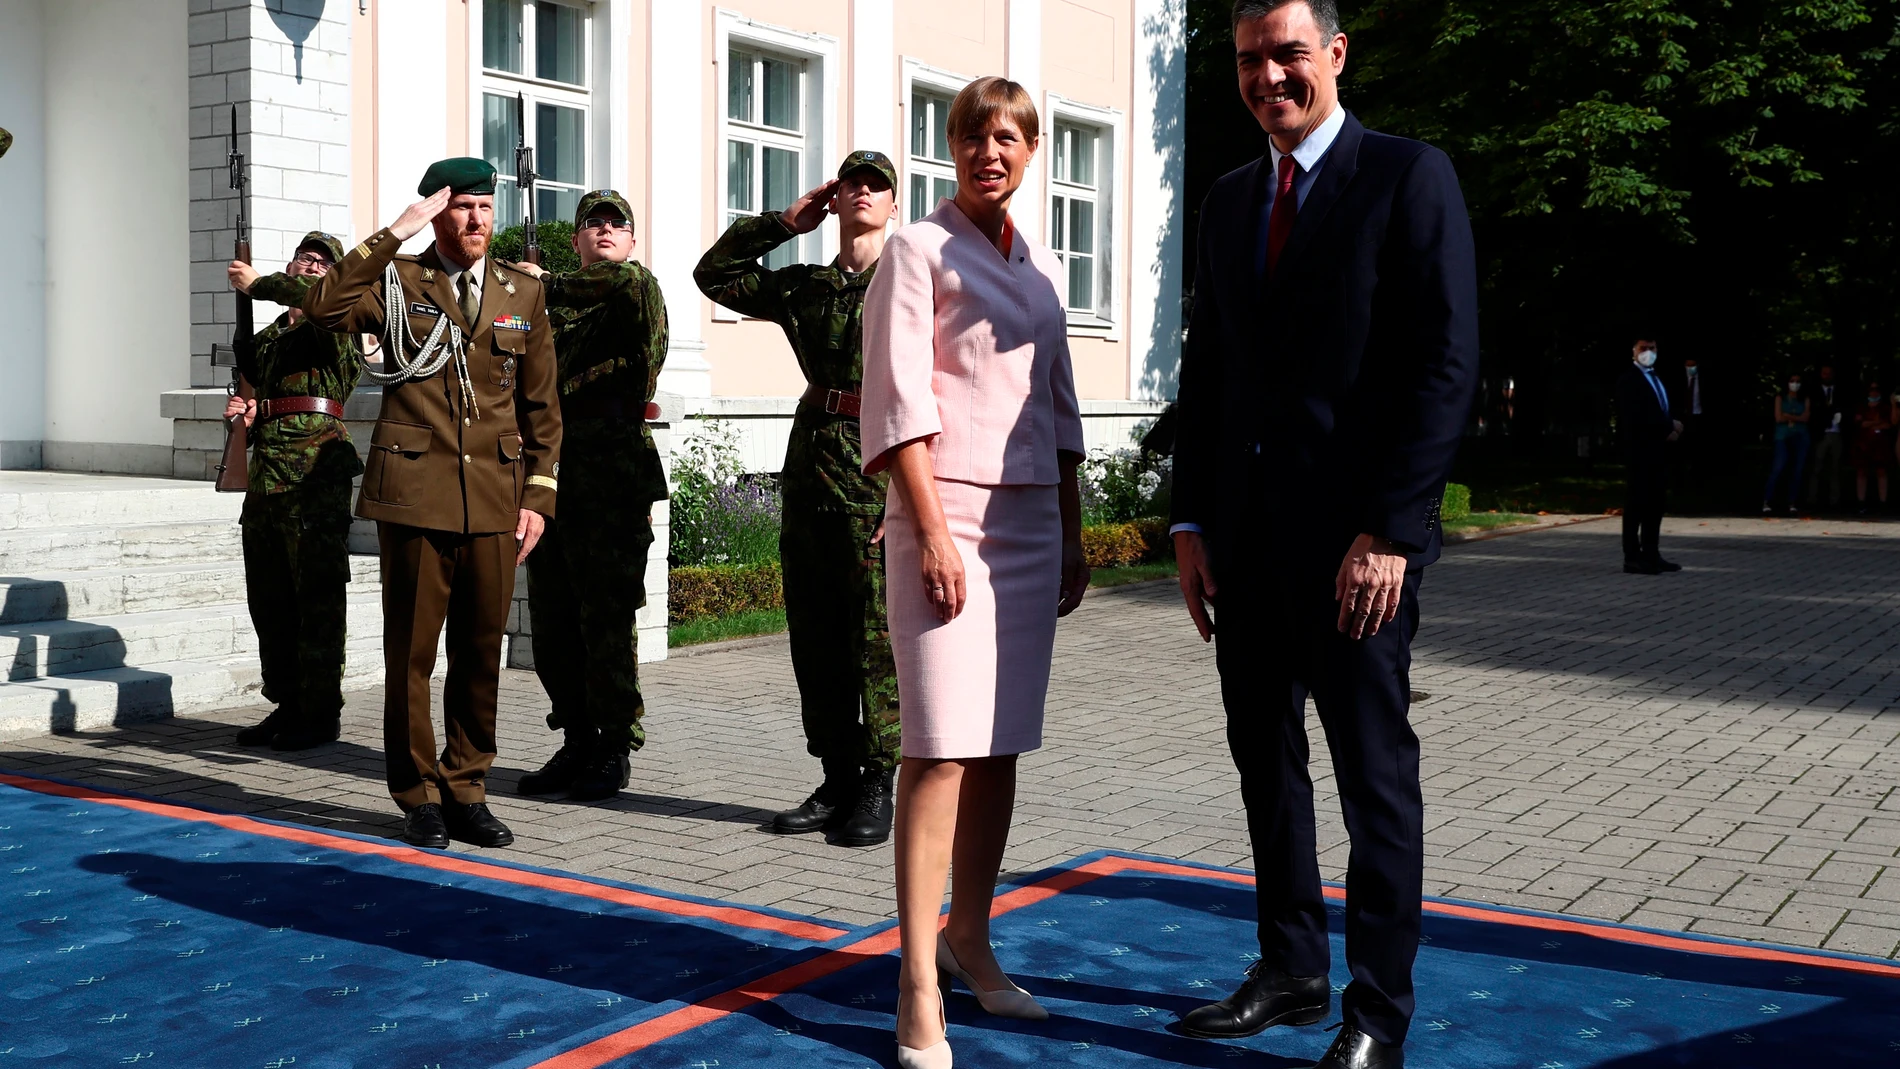 El presidente del Gobierno, Pedro Sánchez, junto con la presidenta de Estonia, Kersti Kaljulaid, durante su visita a la exposición del pintor guipuzcoano Ignacio Zuloaga en Tallín, Estonia